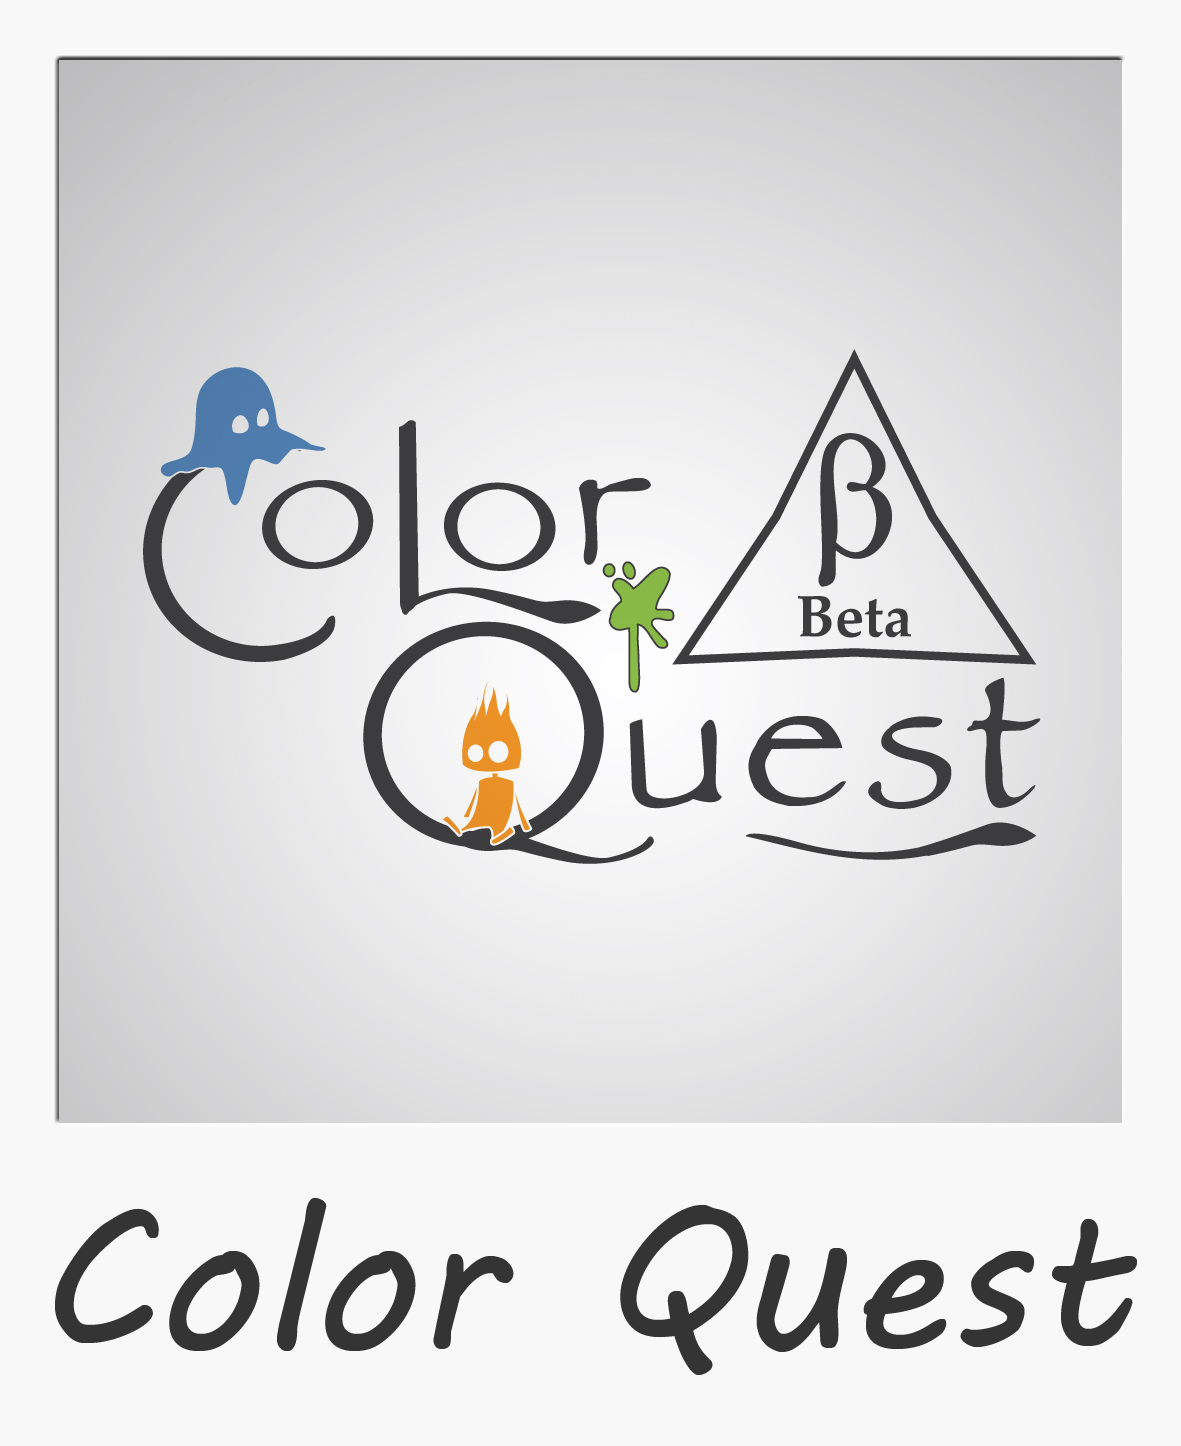 Color Quest Alpha news